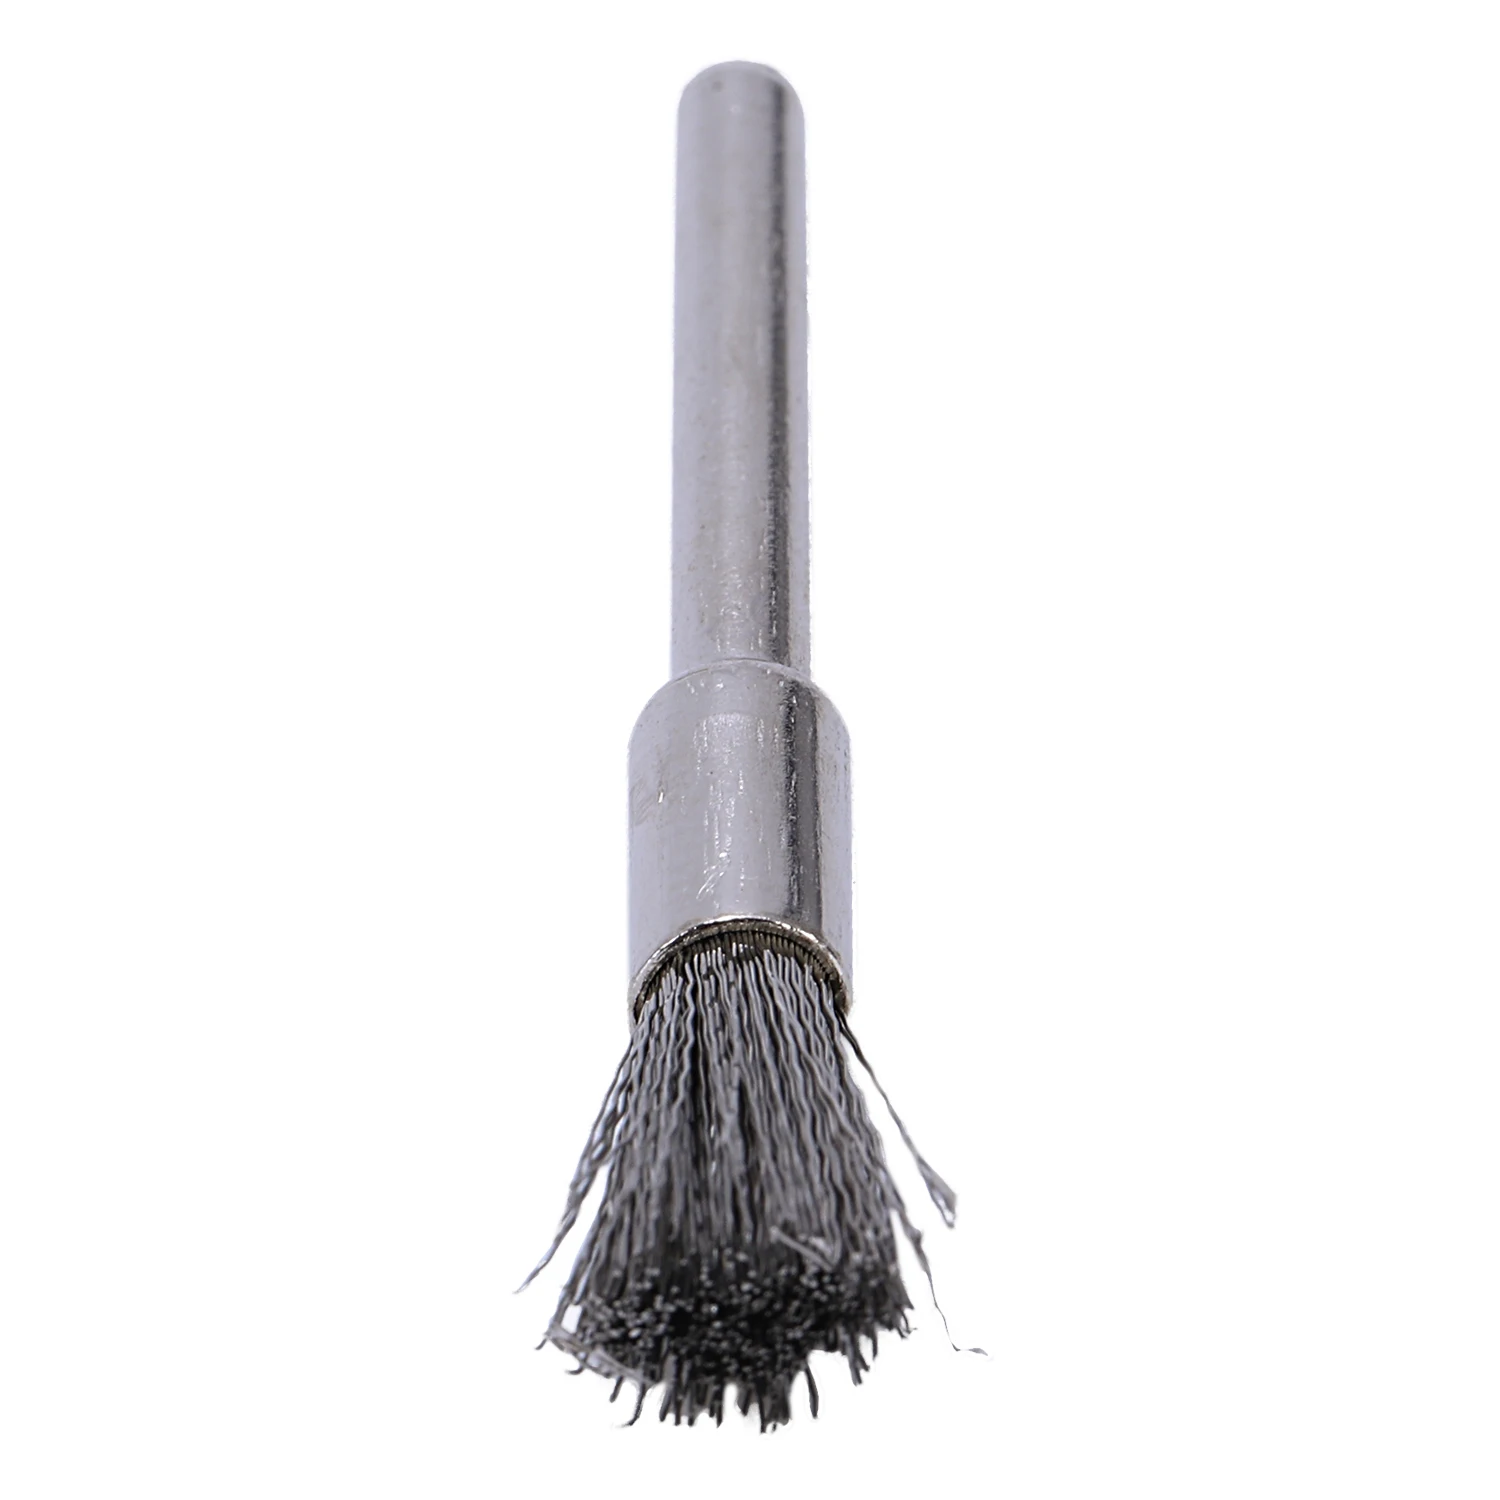 HLZS-10 шт нержавеющая сталь 1/4 дюйма(6 мм) ручка проволочная щетка#532 с 1/8 дюйма(3 мм) хвостовик для Dremel и совместимый вращающийся инструмент